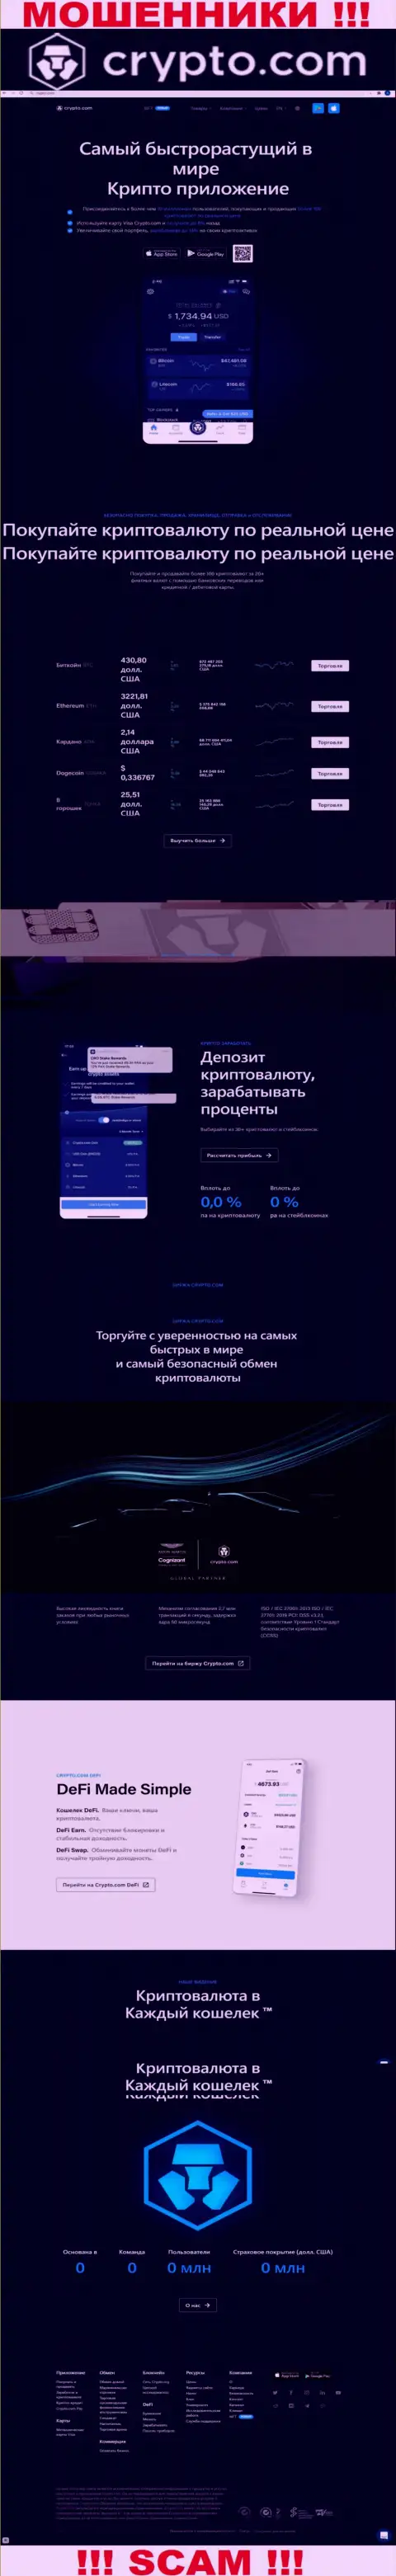 Официальный web-сайт мошенников Крипто Ком, заполненный материалами для лохов